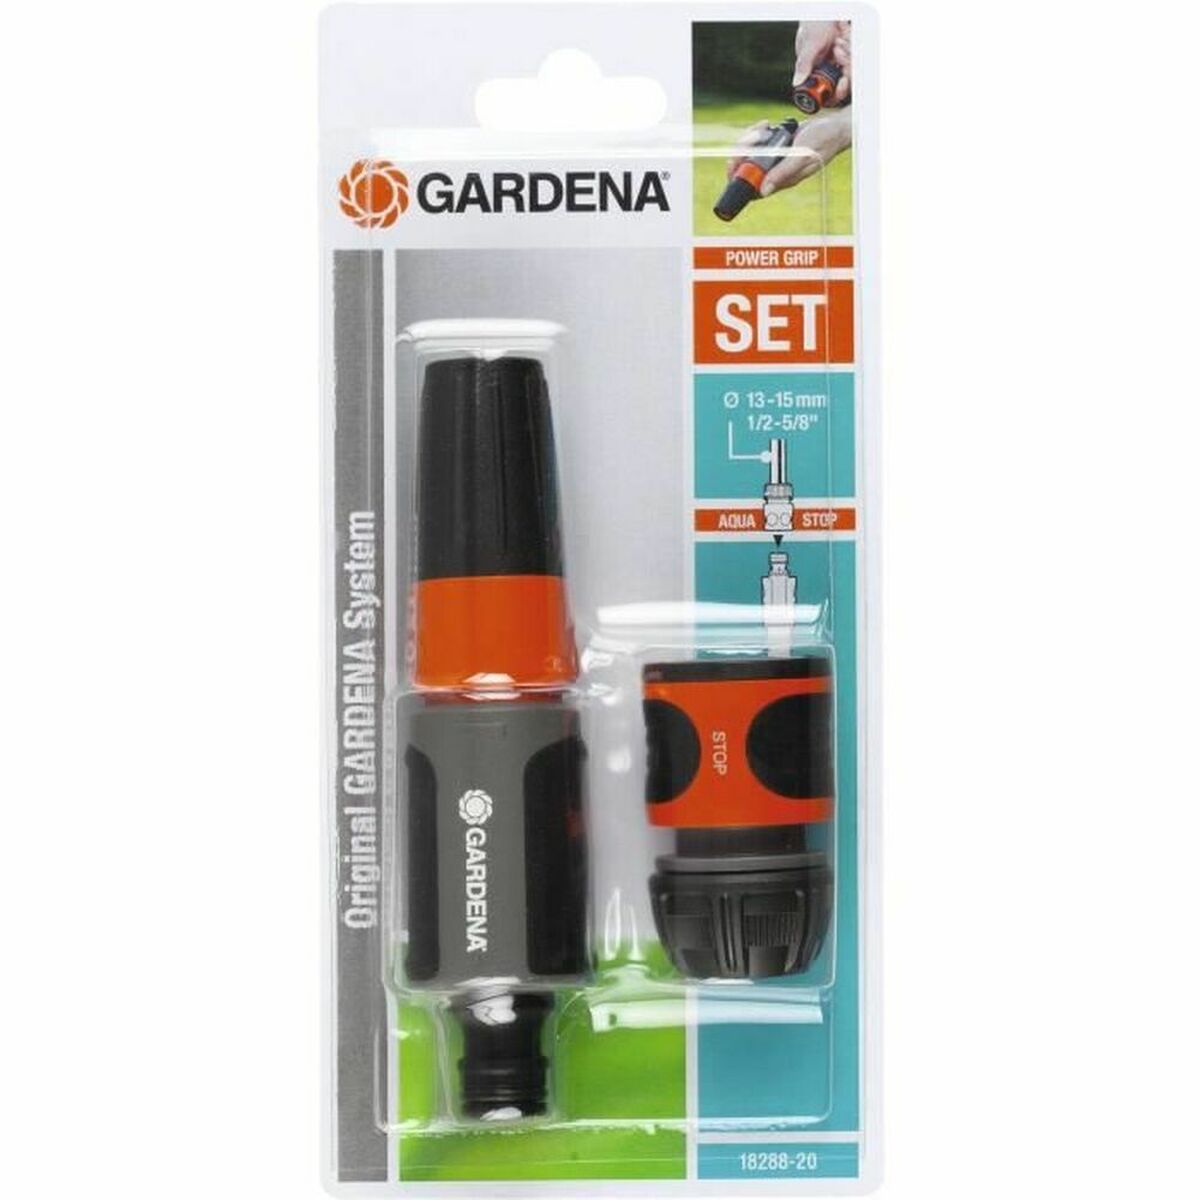 Set Gardena 18288-20 Irrigation kit